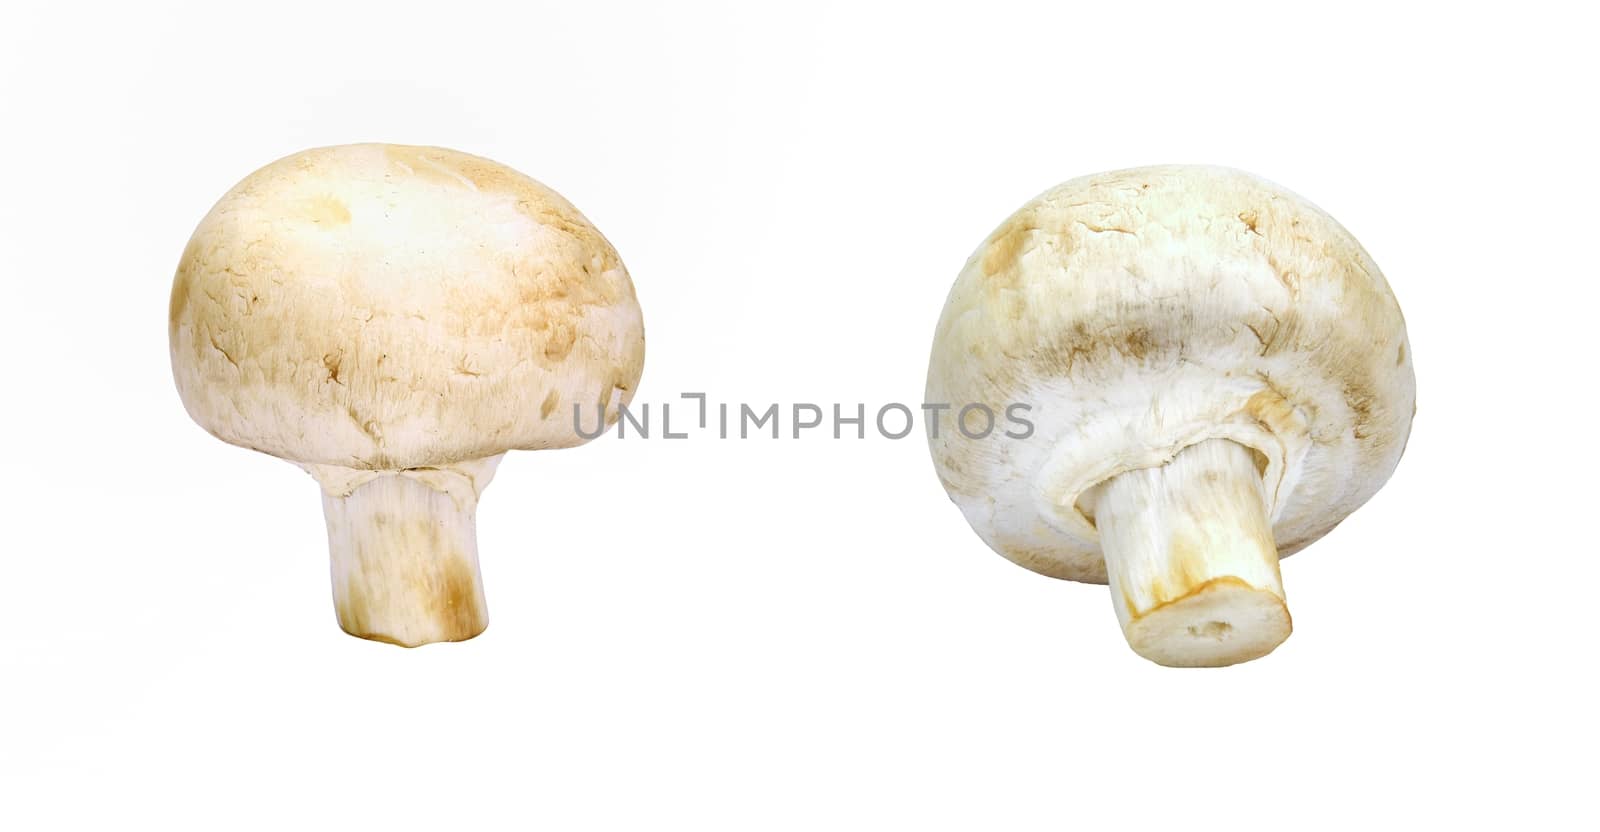 Isolated raw mushroom over white background